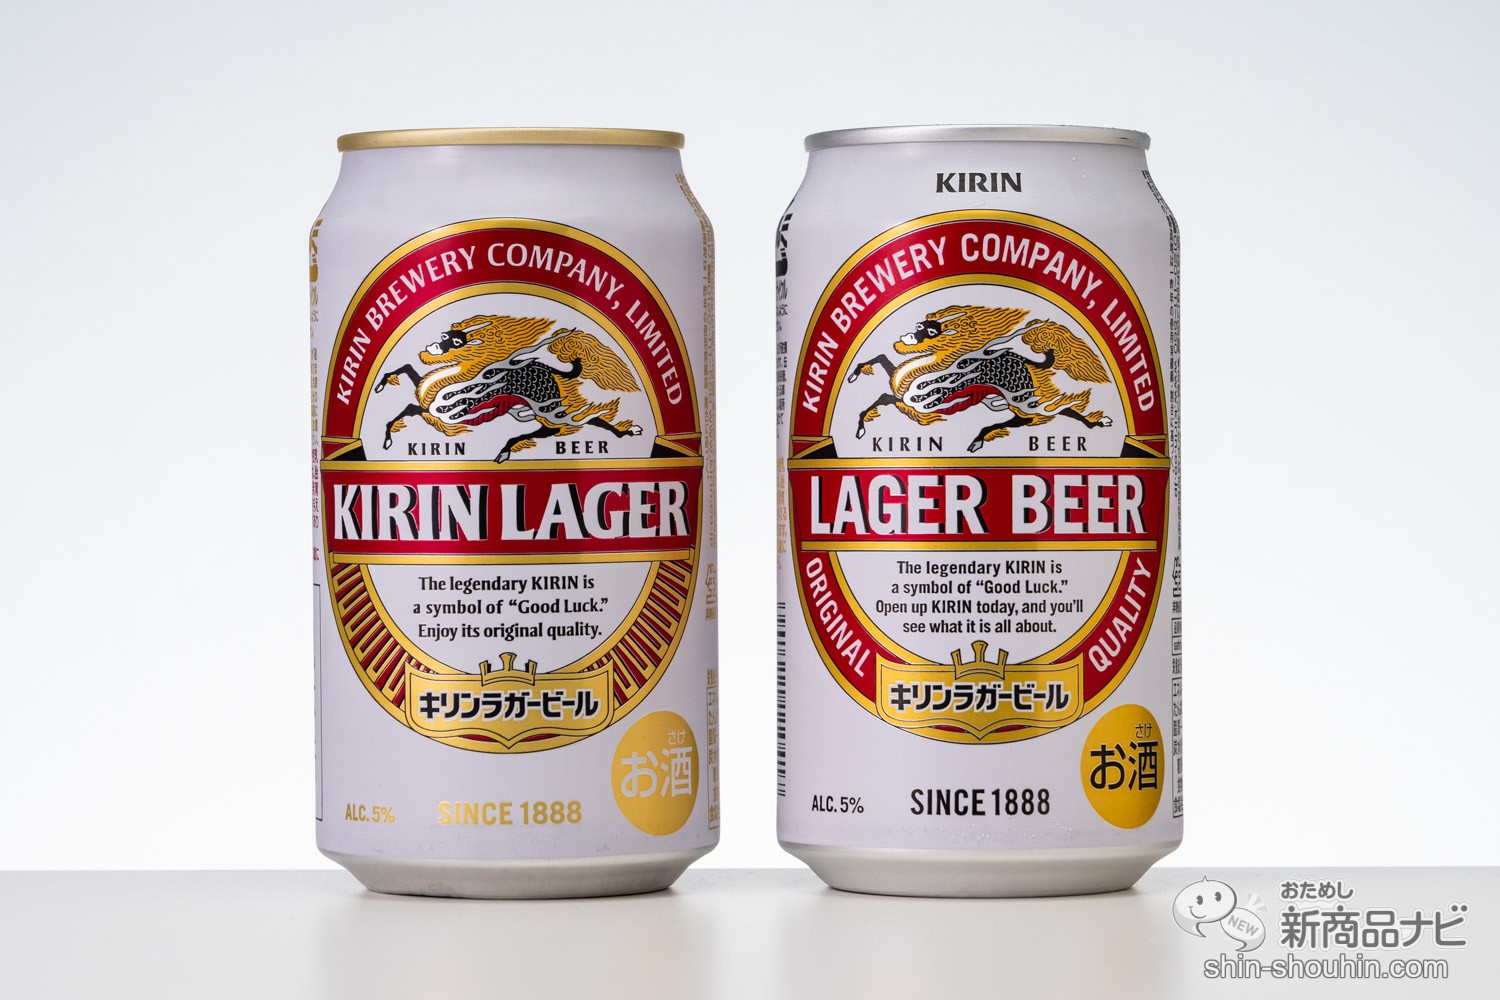 おためし新商品ナビ » Blog Archive » 【飲み比べ】10年ぶりの進化で『キリンラガービール』はどう変わった!?【ラベルの歴史付】